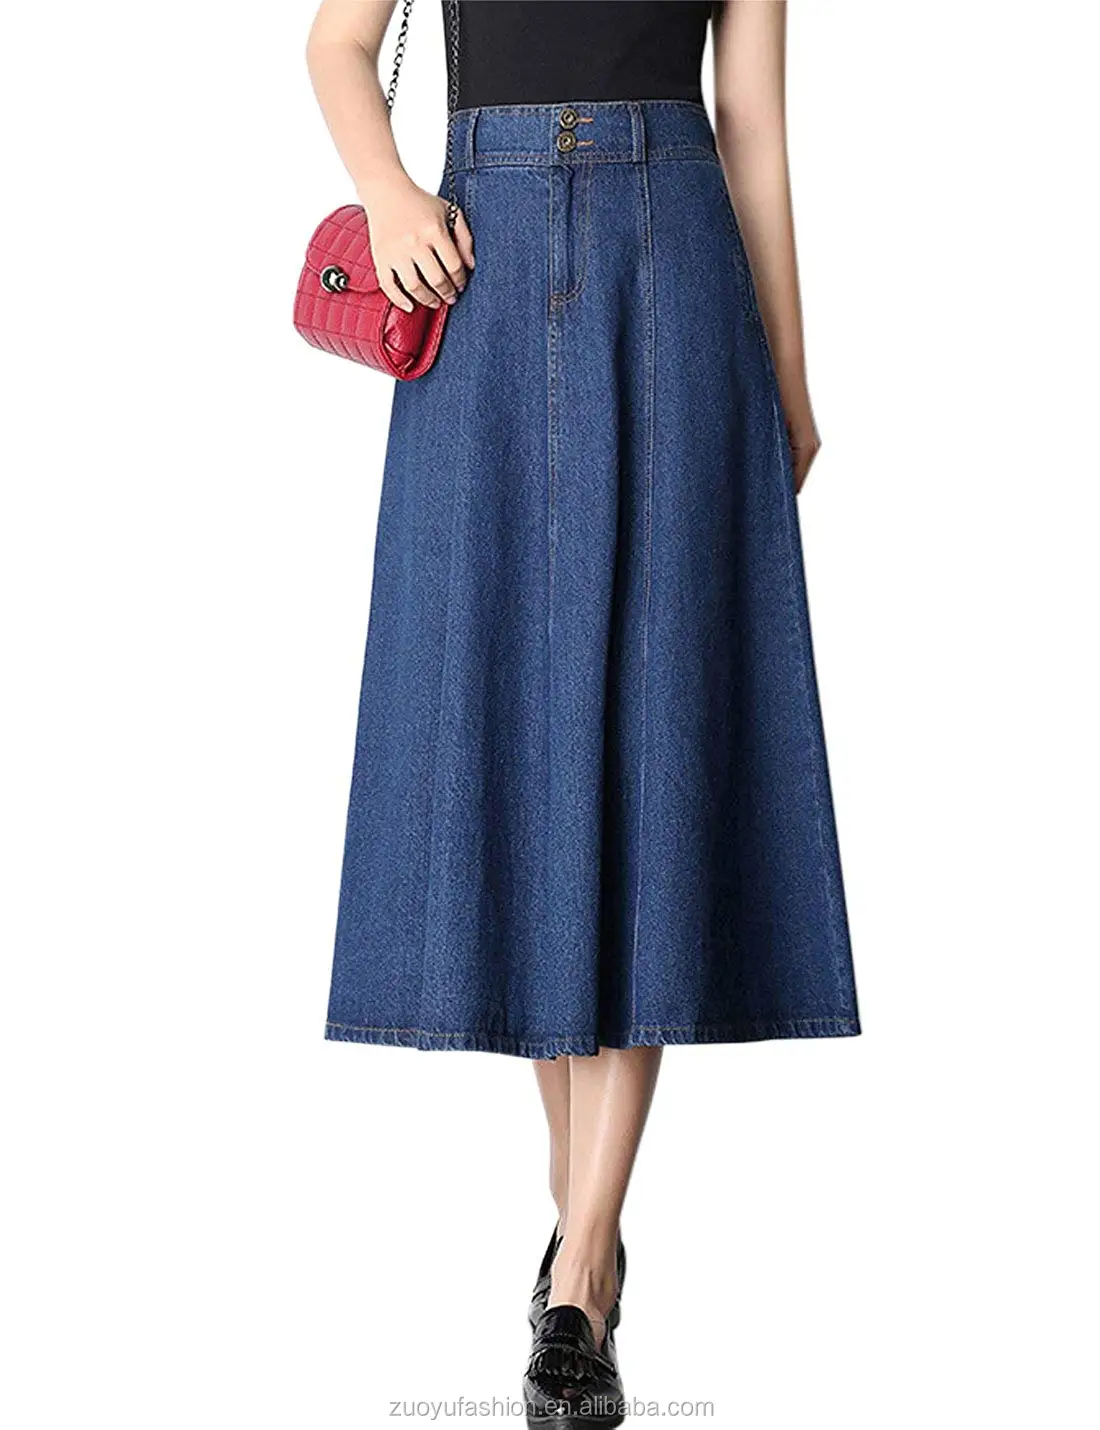 Long Women Denim Skirt Blue Midi Jeans Skirt - Buy High Quality Long ...